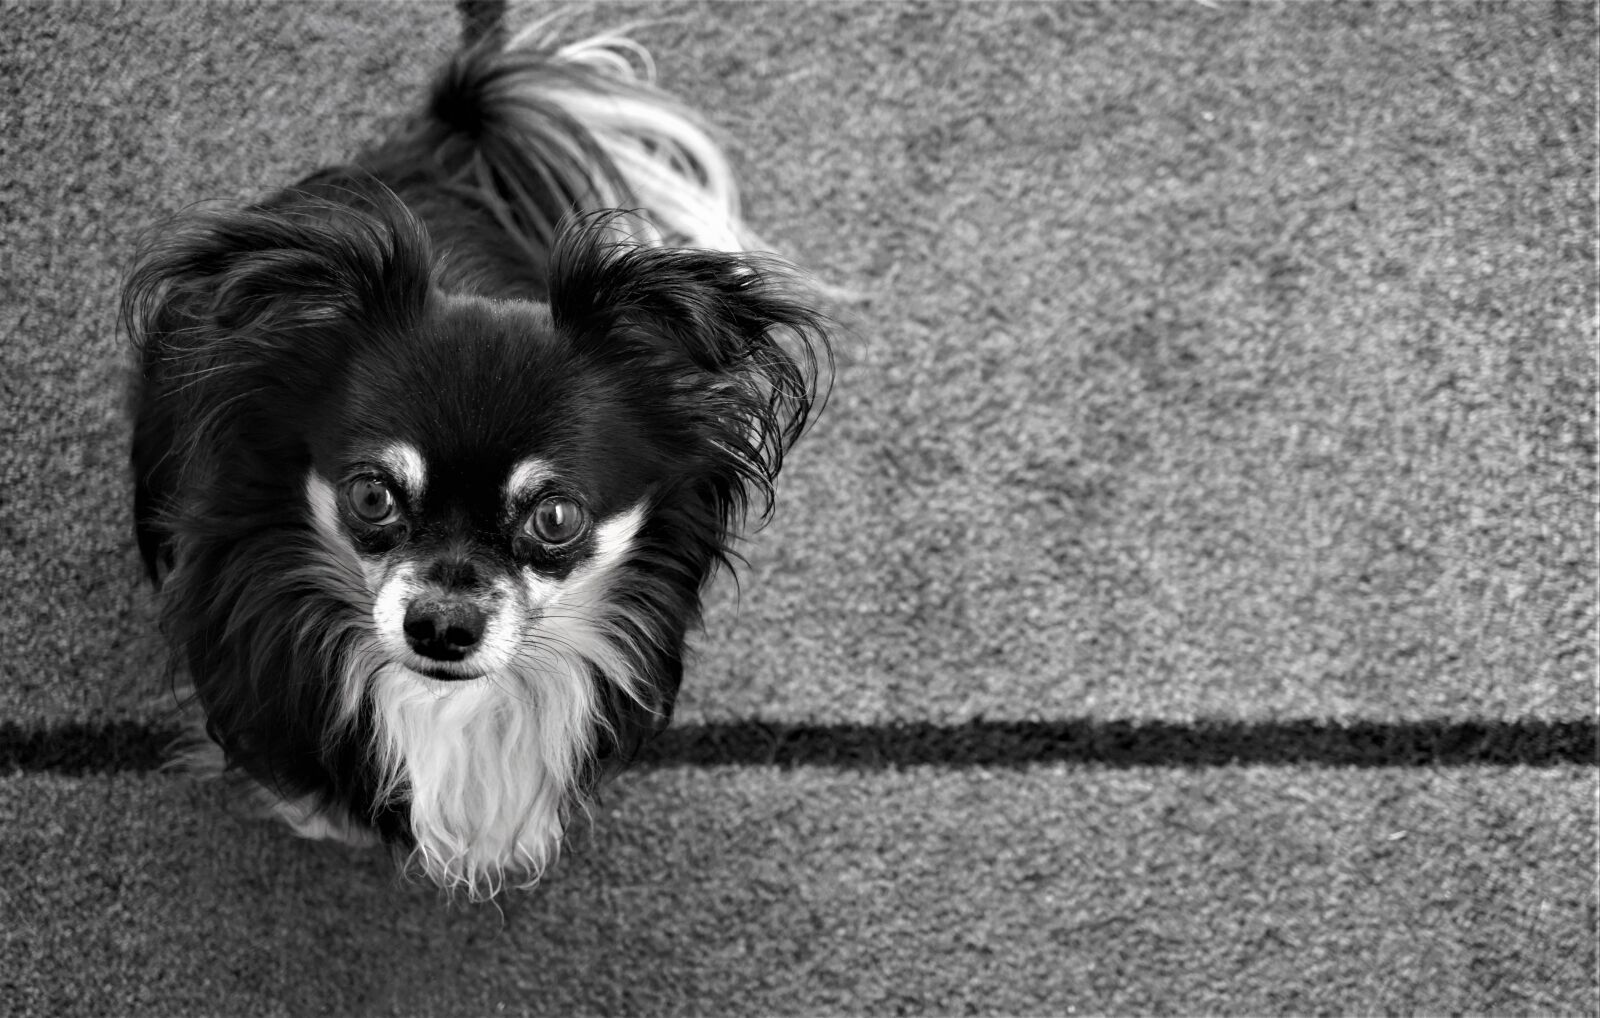 Sony a6000 + Sony E 30mm F3.5 Macro sample photo. Chihuahua, small dog, sweet photography